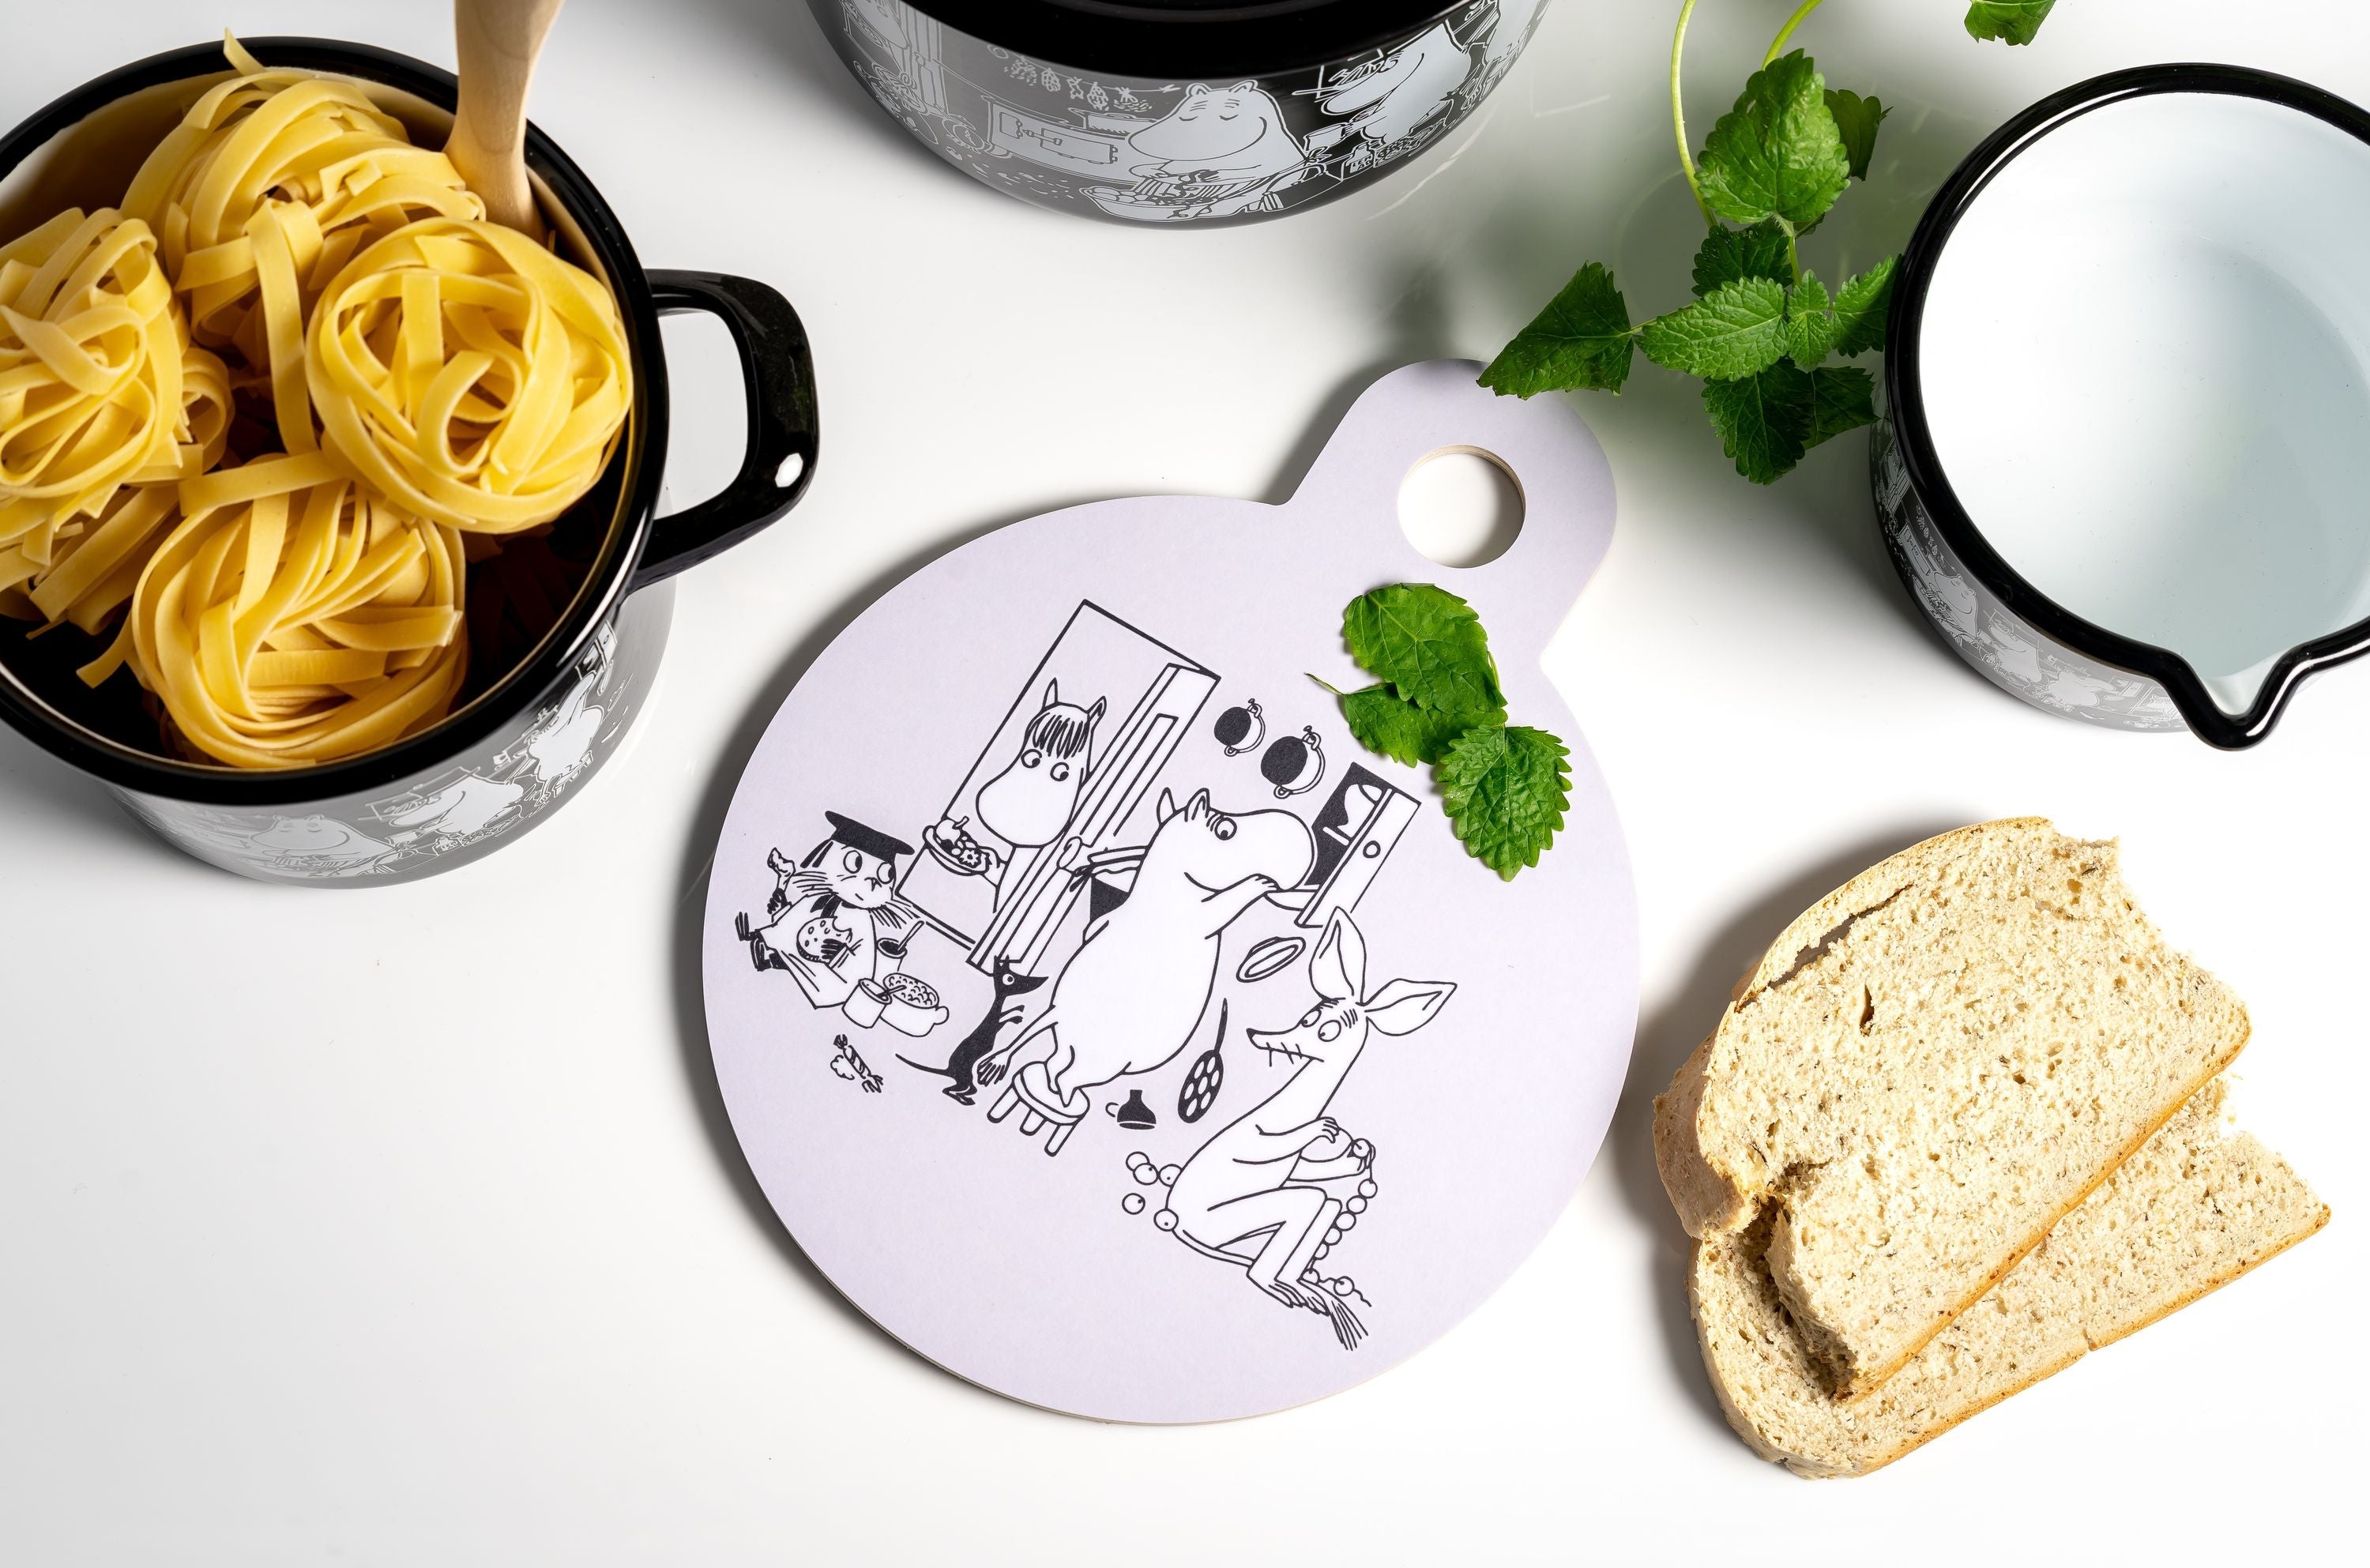 Muurla Moomin en la olla de esmalte de la cocina con tapa, en la cocina